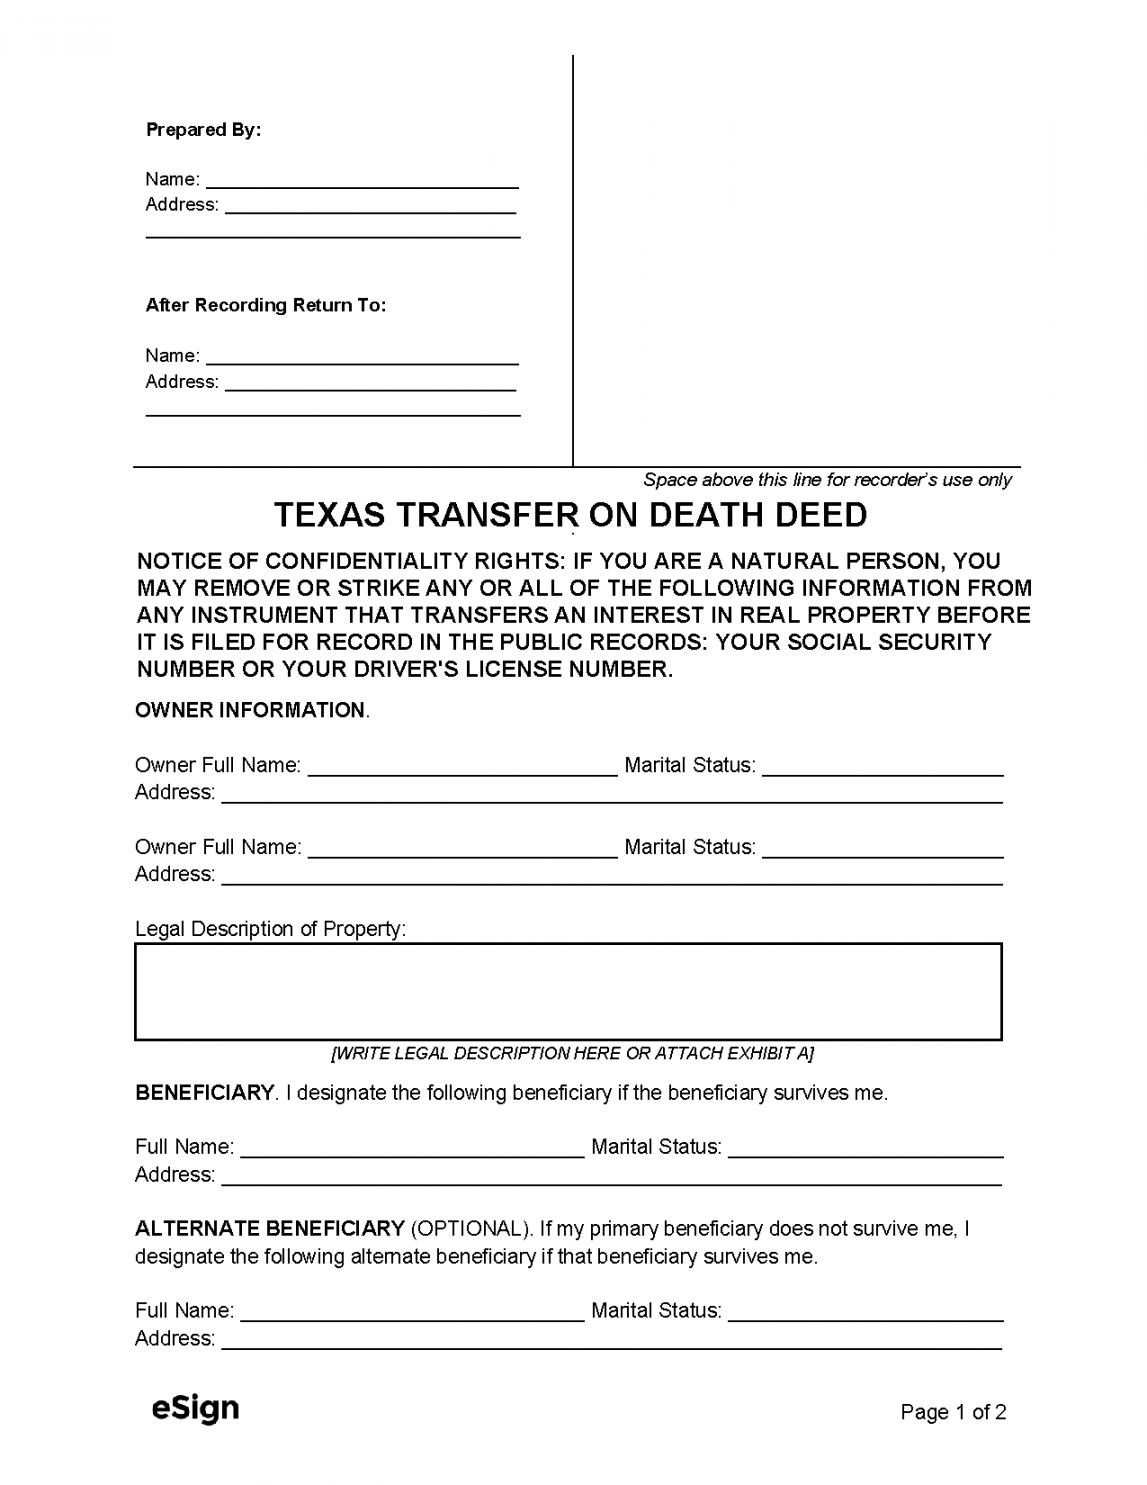 Free Texas Transfer on Death Deed Form  PDF  Word - FREE Printables - Free Printable Transfer On Death Deed Form